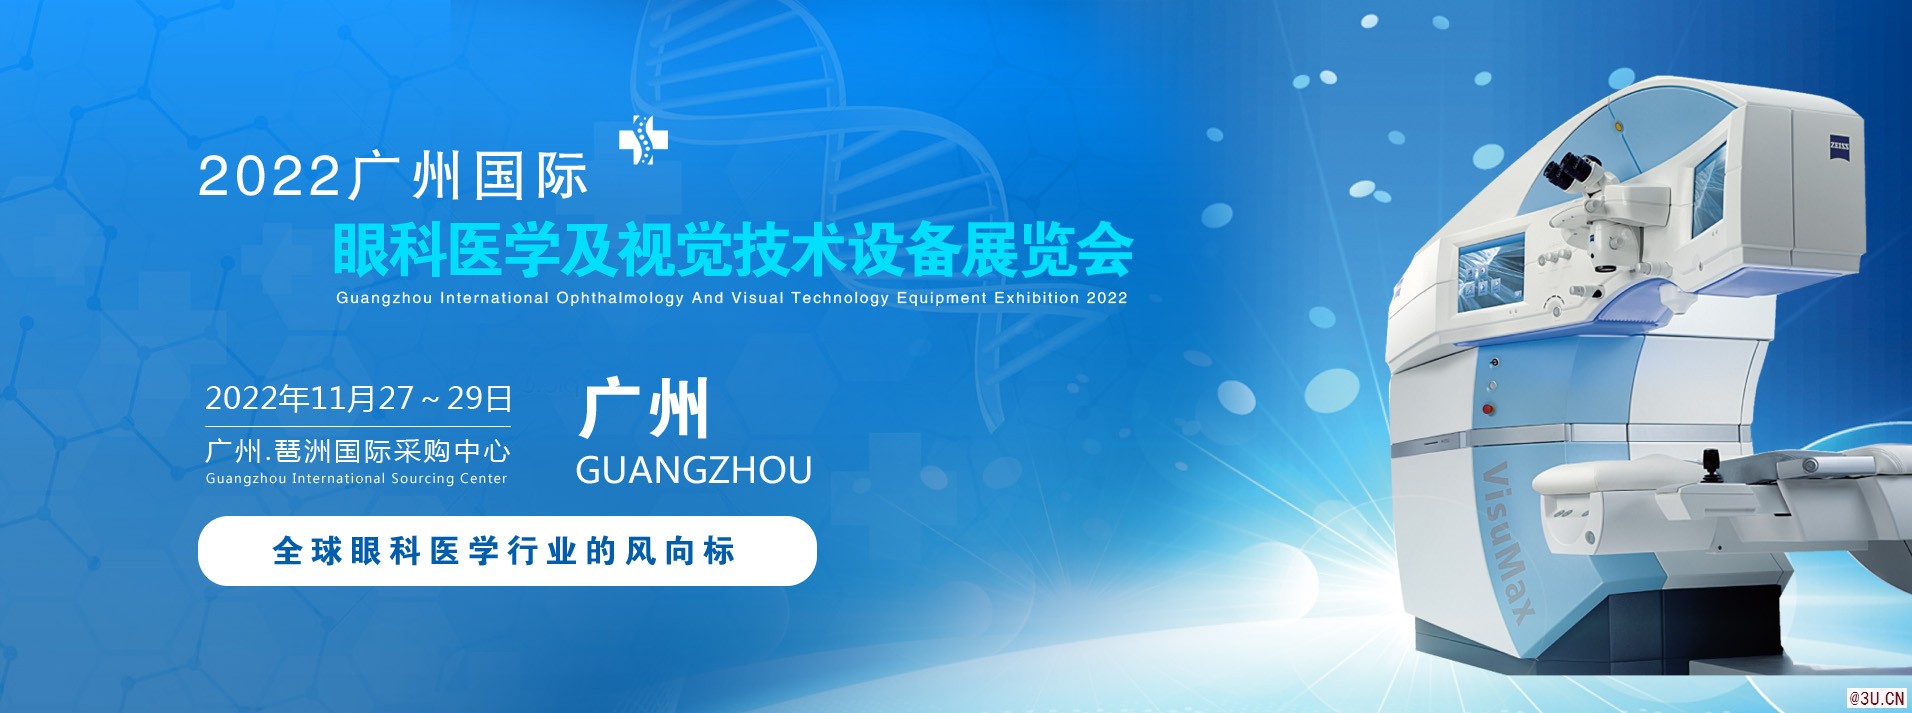 2022廣州國際眼科醫學及視覺技術設備展覽會